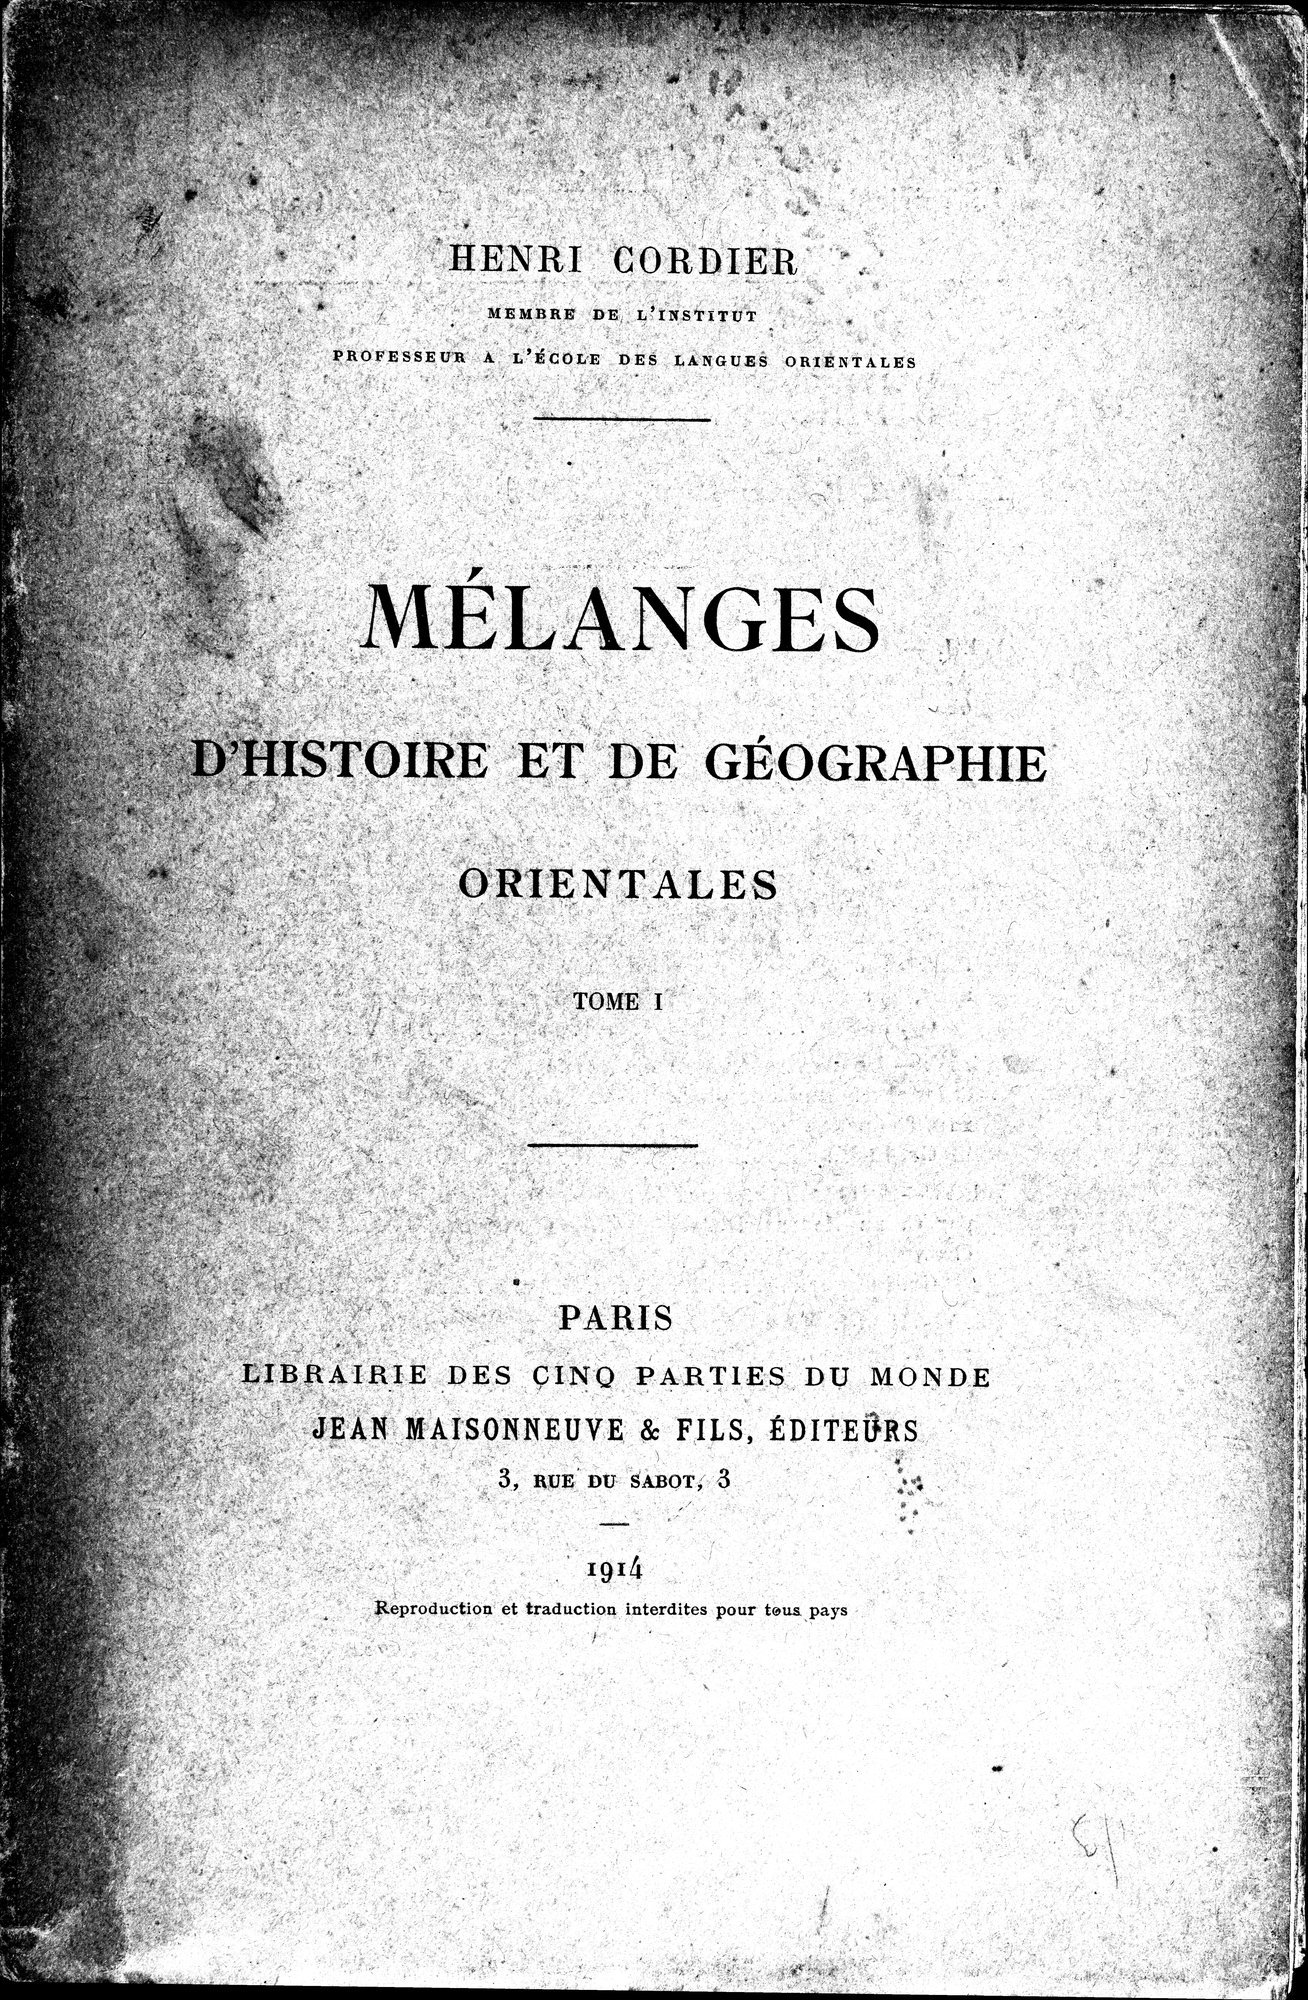 Mélanges d'Histoire et de Géographie Orientales : vol.1 / Page 1 (Grayscale High Resolution Image)